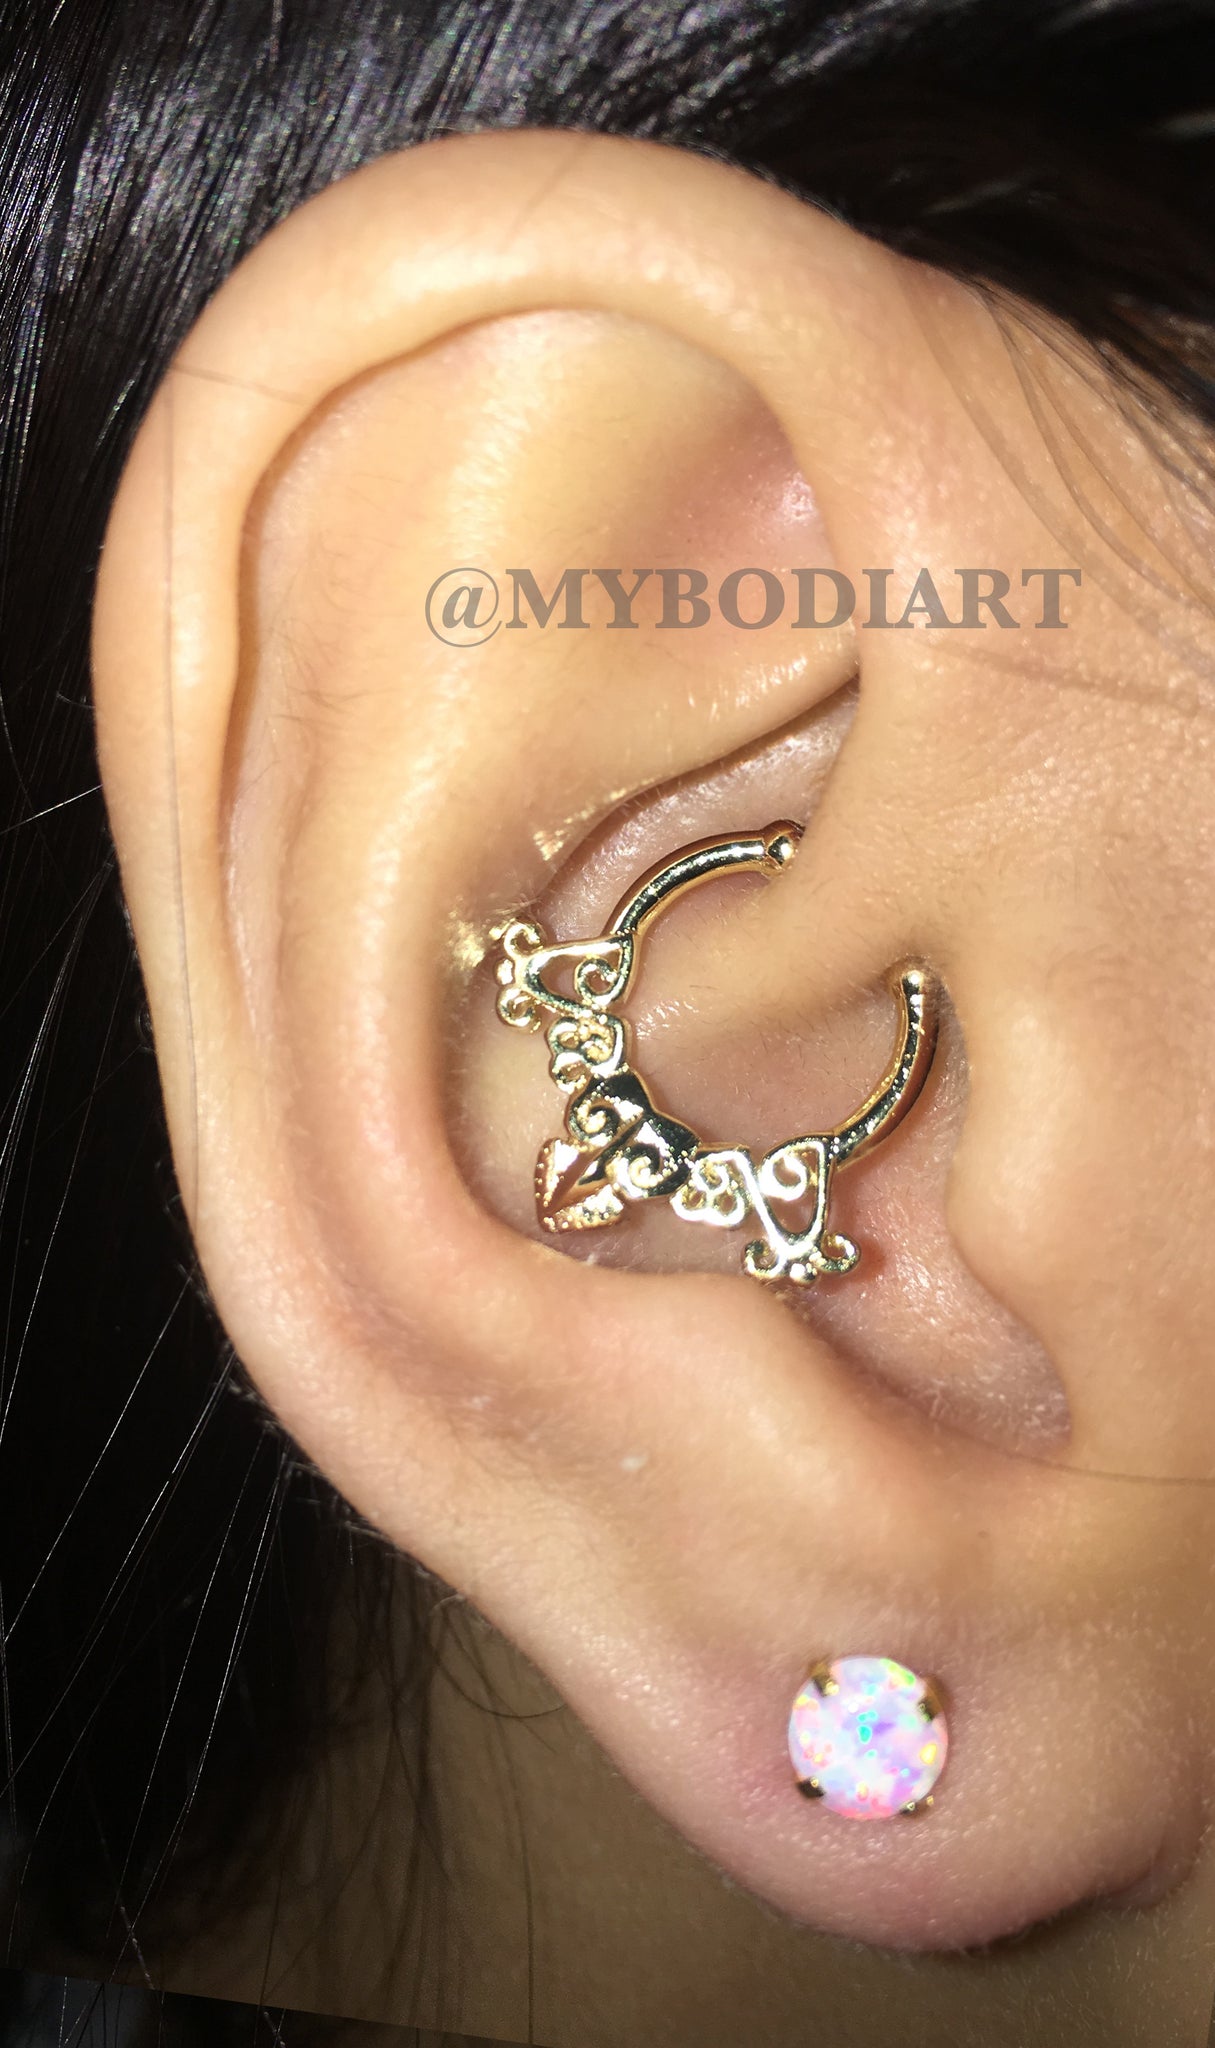 Cute Ear Piercing Ideas - Opal Lobe Earring Stud - Gold Rook Daith Hoop Ring - www.MyBodiArt.com